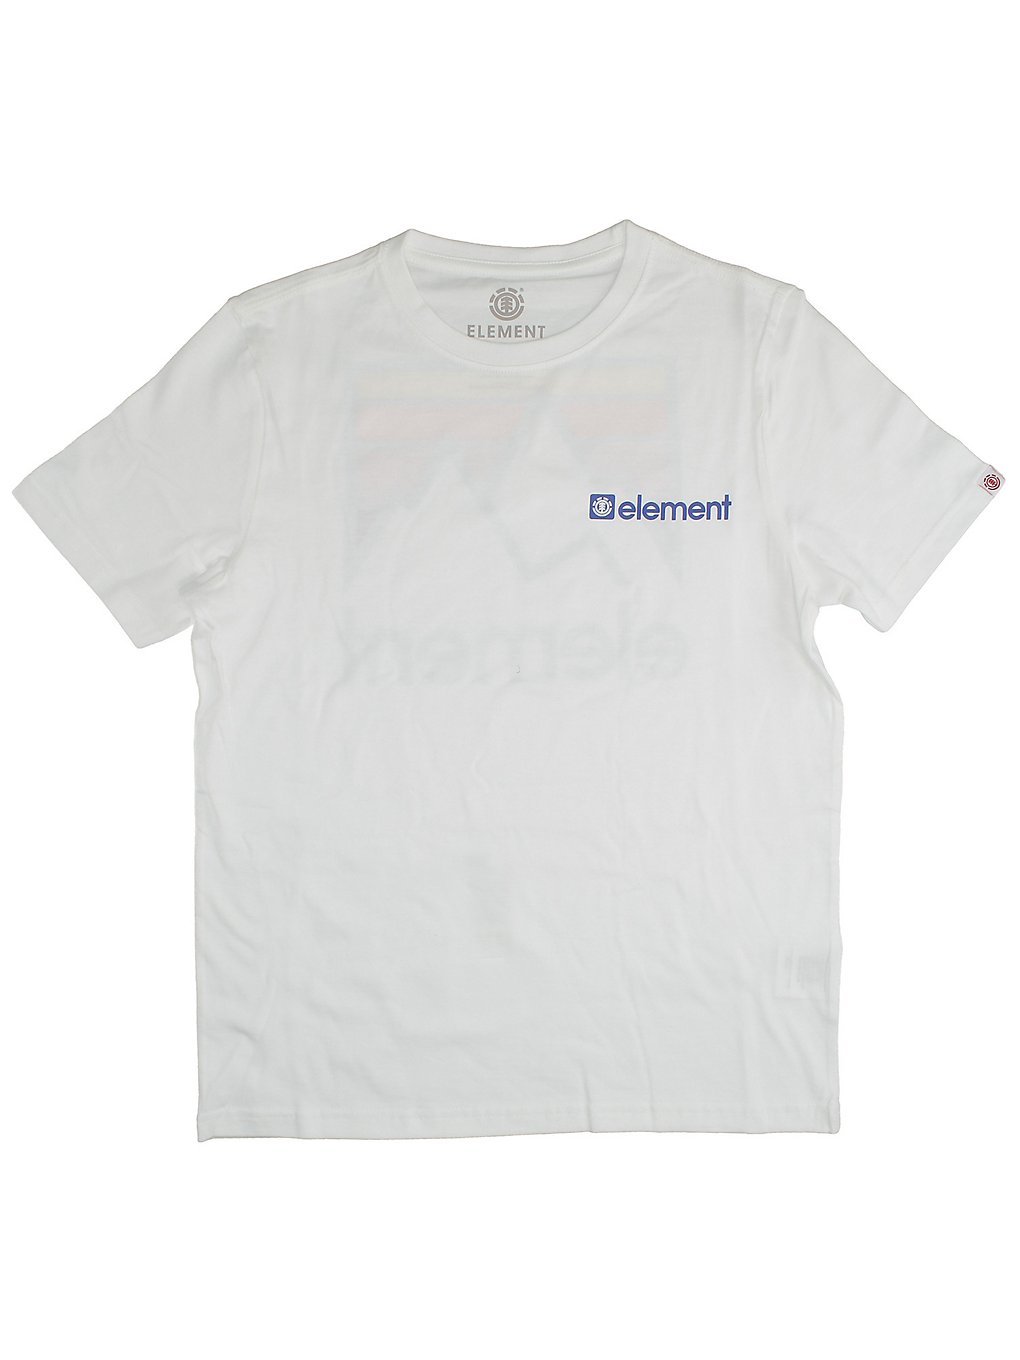 Element joint t-shirt valkoinen, element